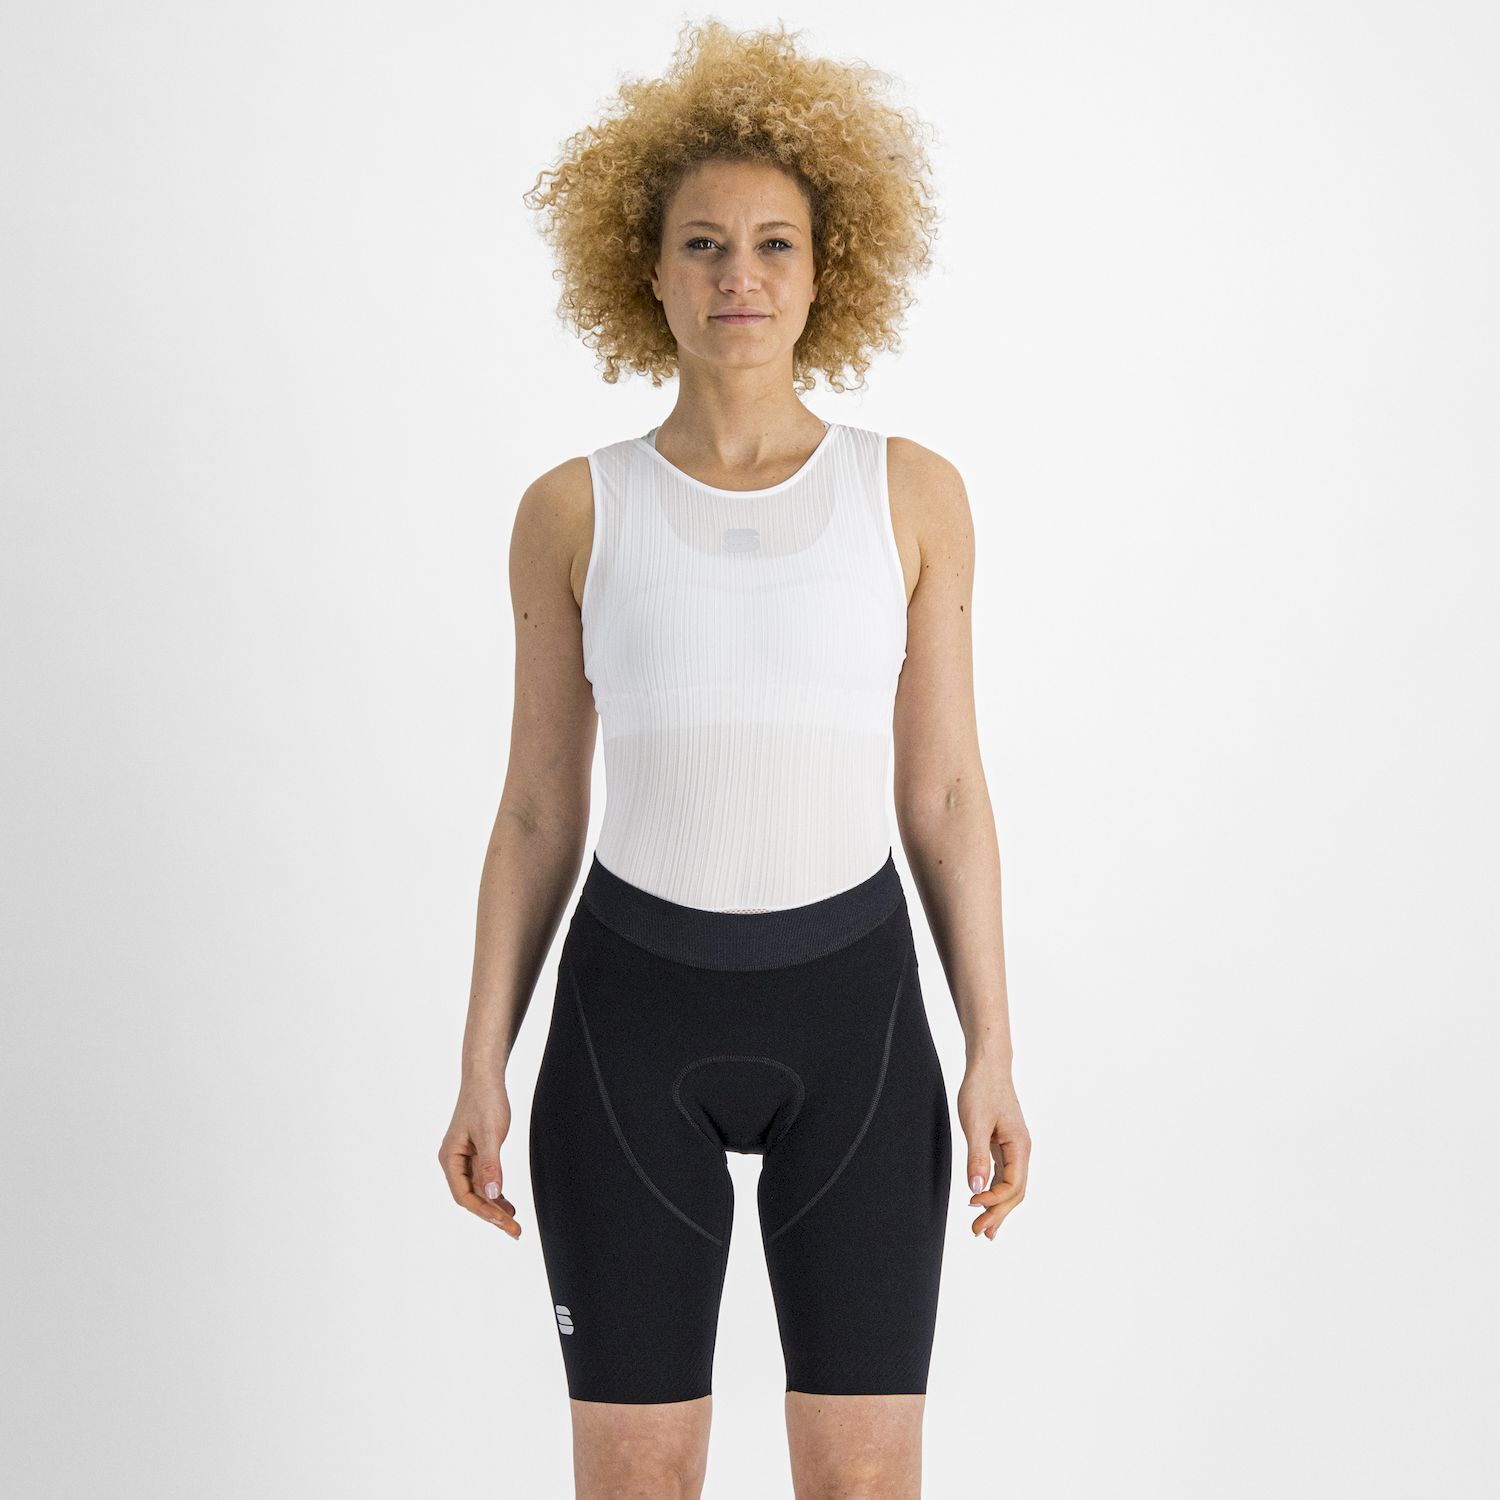 Sportful Total Comfort Short - Cycling shorts - Women's